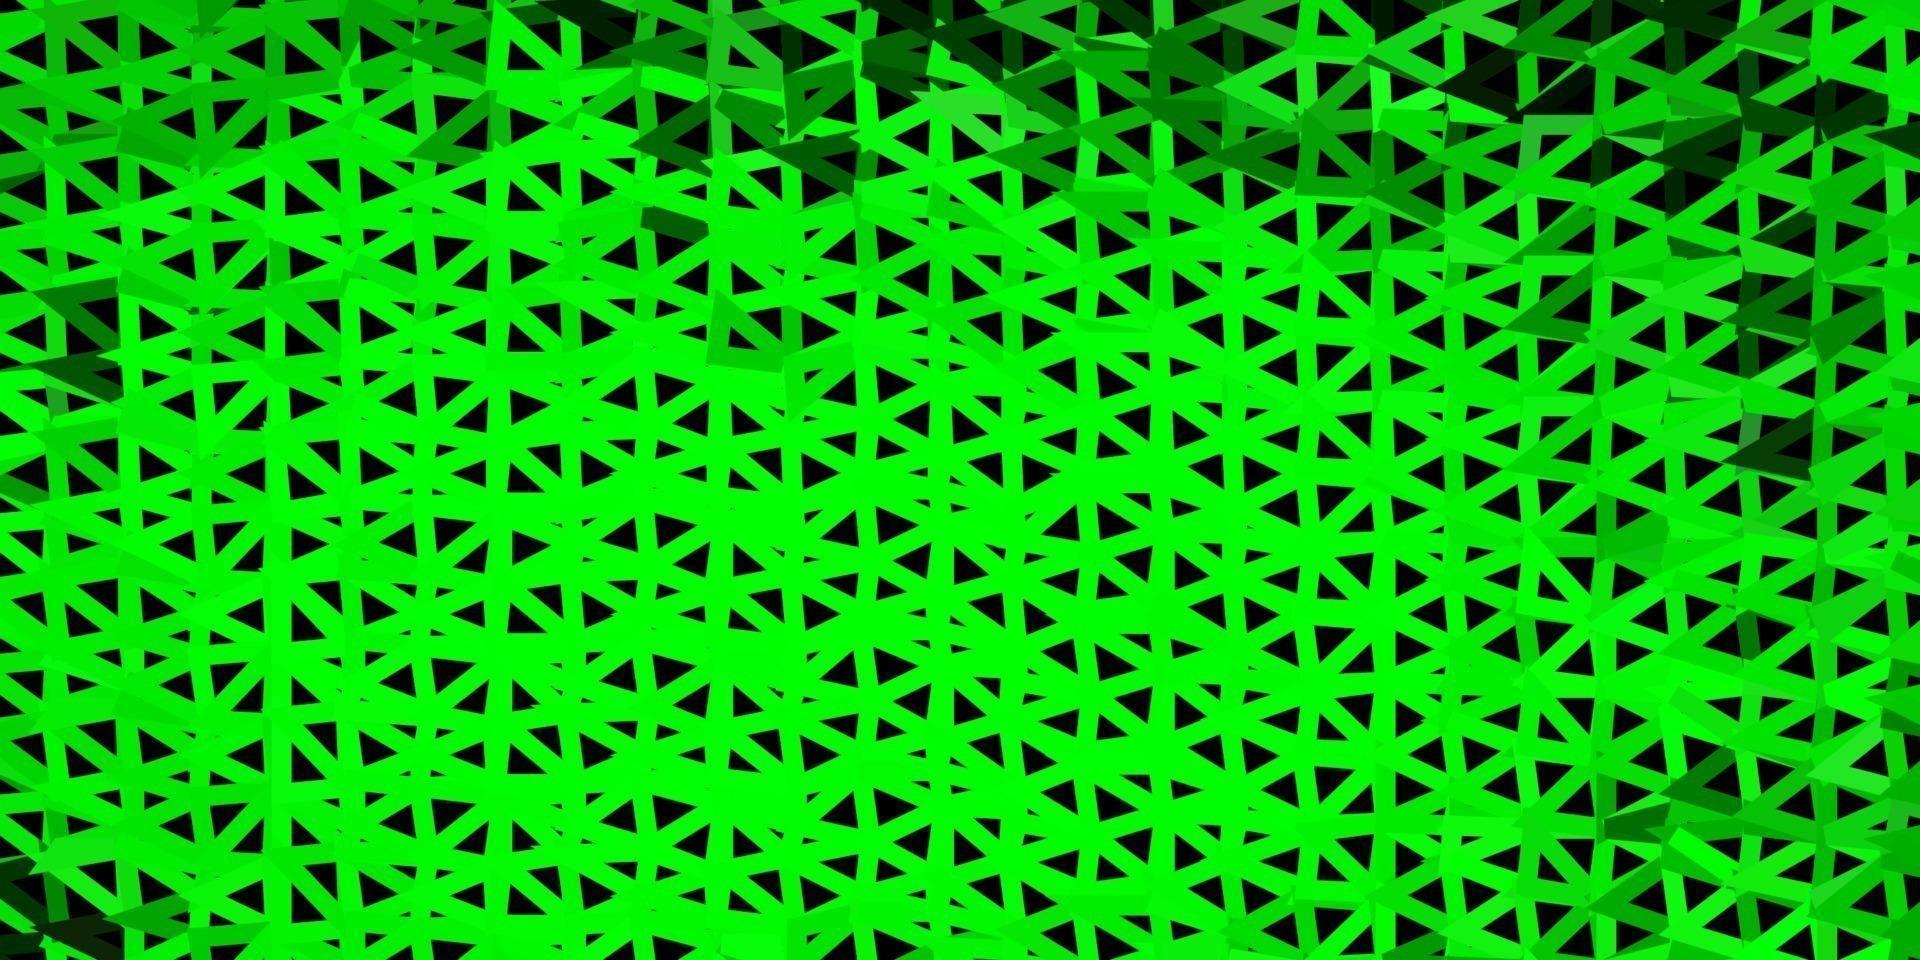 hellgrüne, gelbe Vektor abstrakte Dreieckbeschaffenheit.